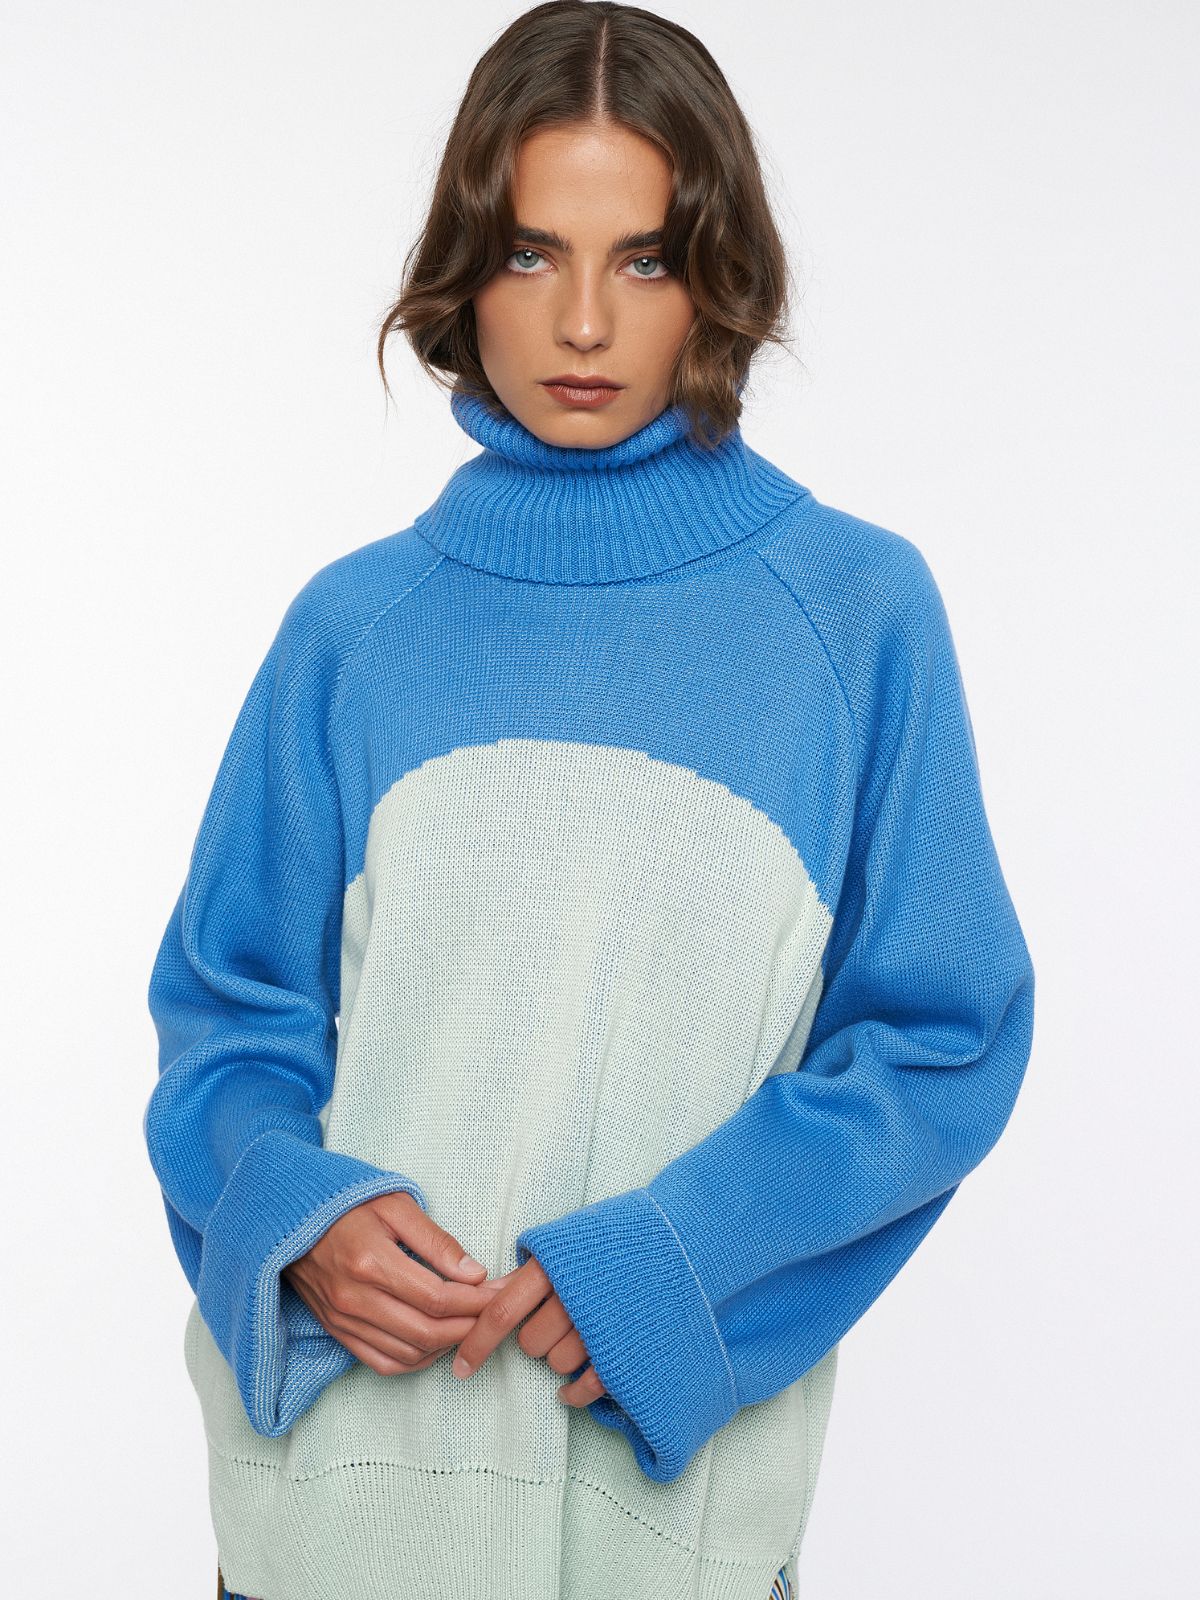 GLACIER knit sweater